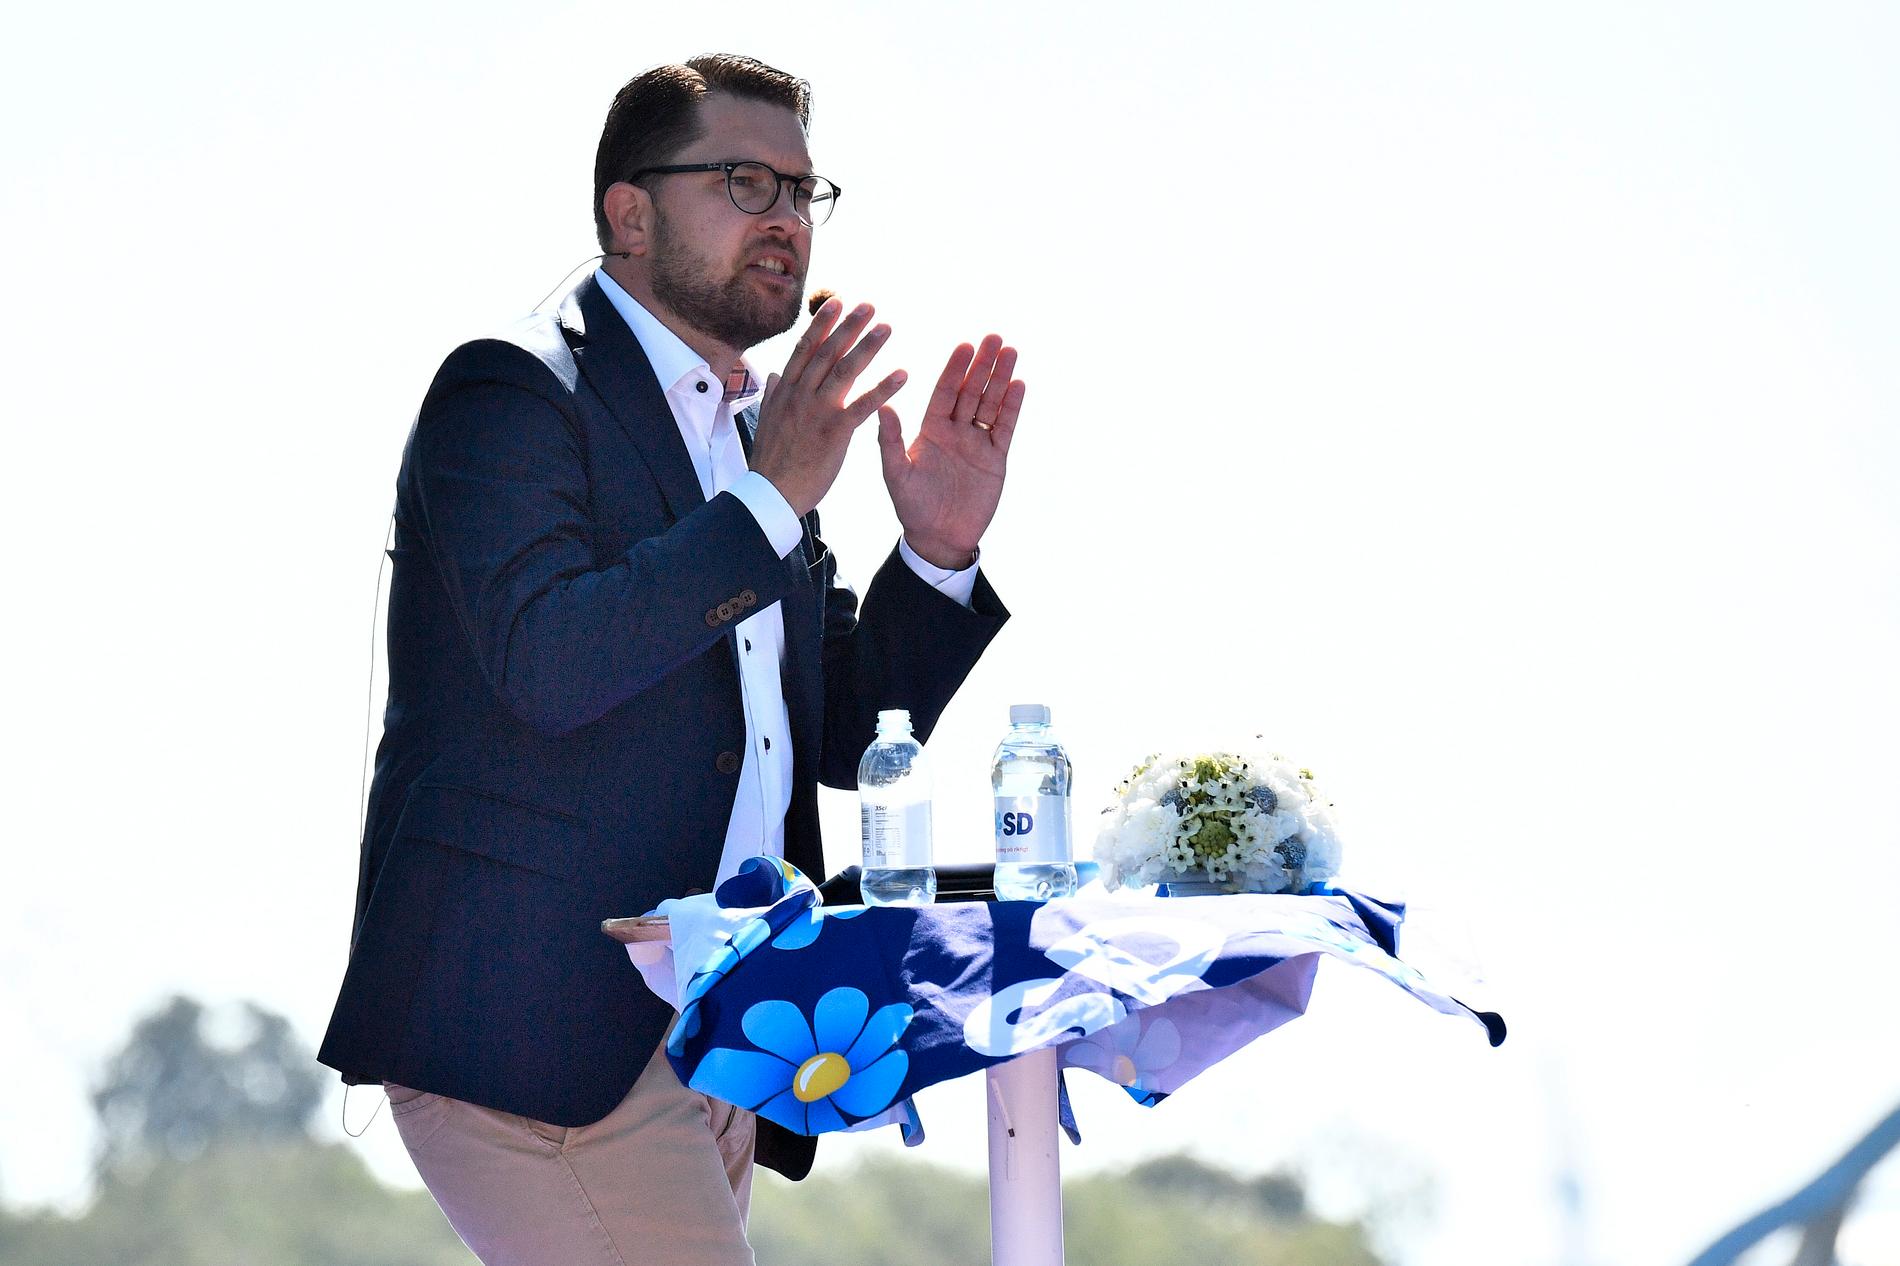 Sverigedemokraternas partiledare Jimmie Åkesson talar under partiets sommarfestival i Sölvesborg.